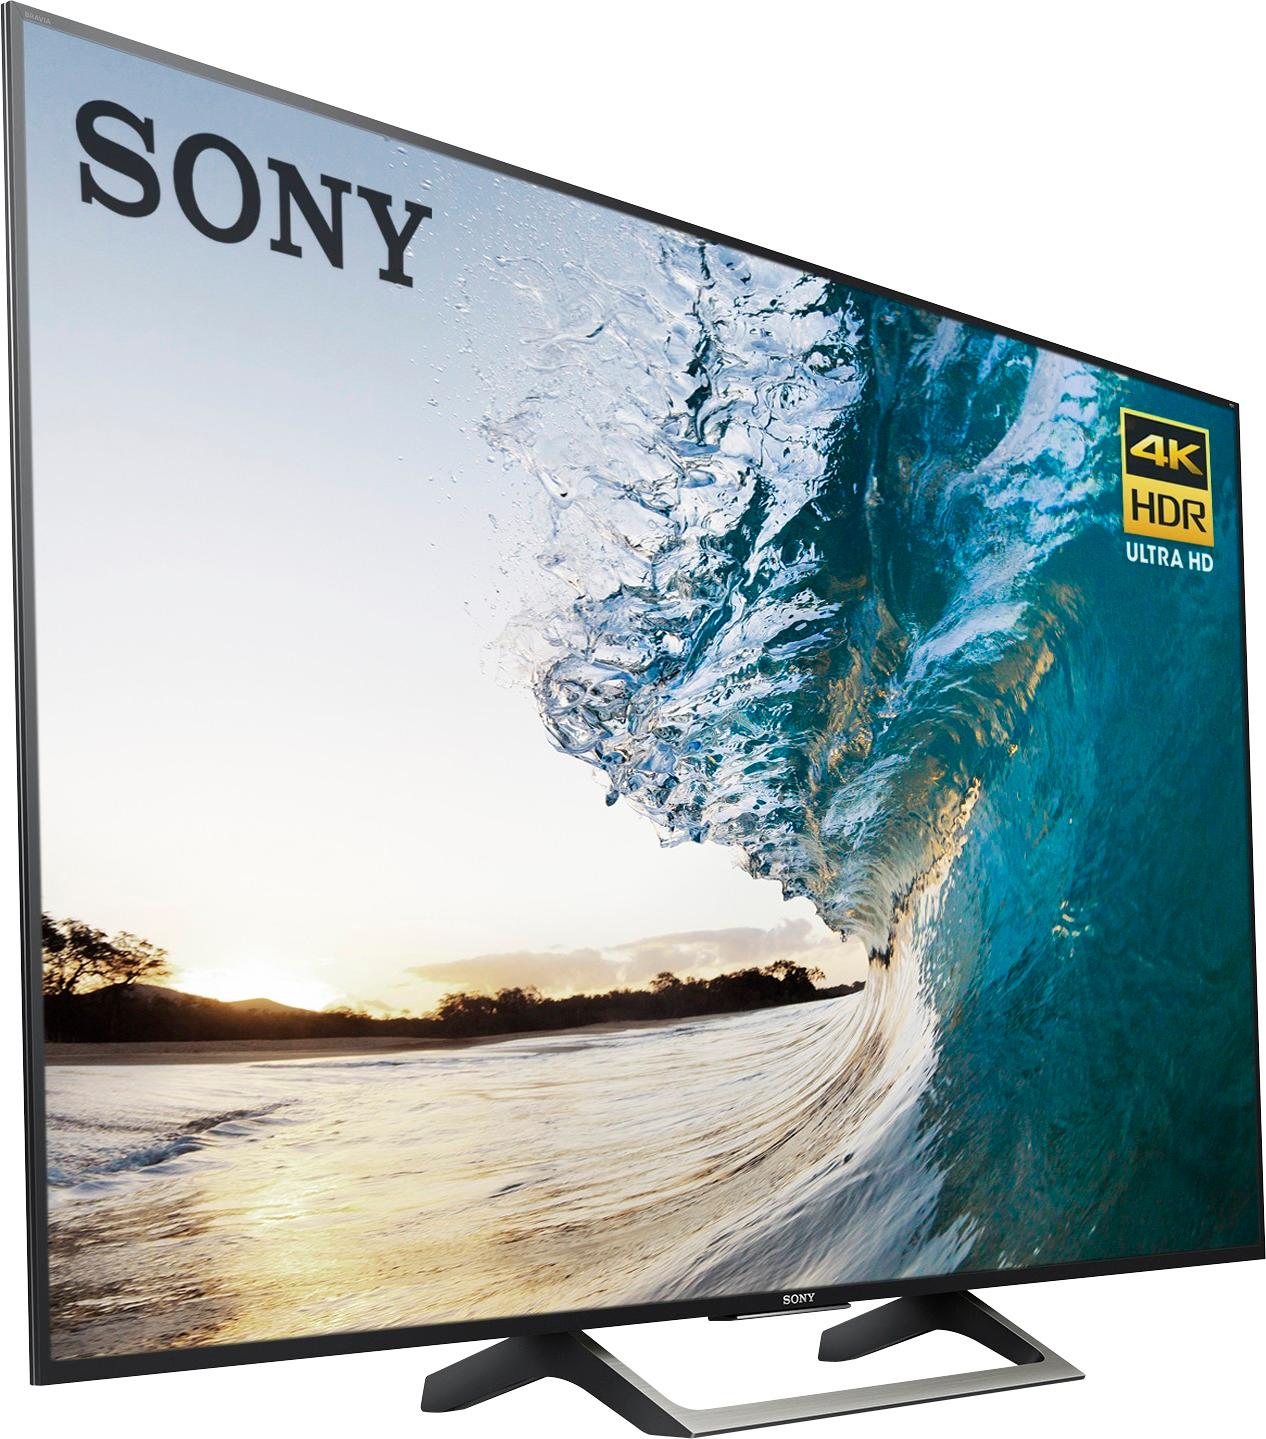 Sony Tv Repair dubai,Sony LCD Tv Repair dubai,